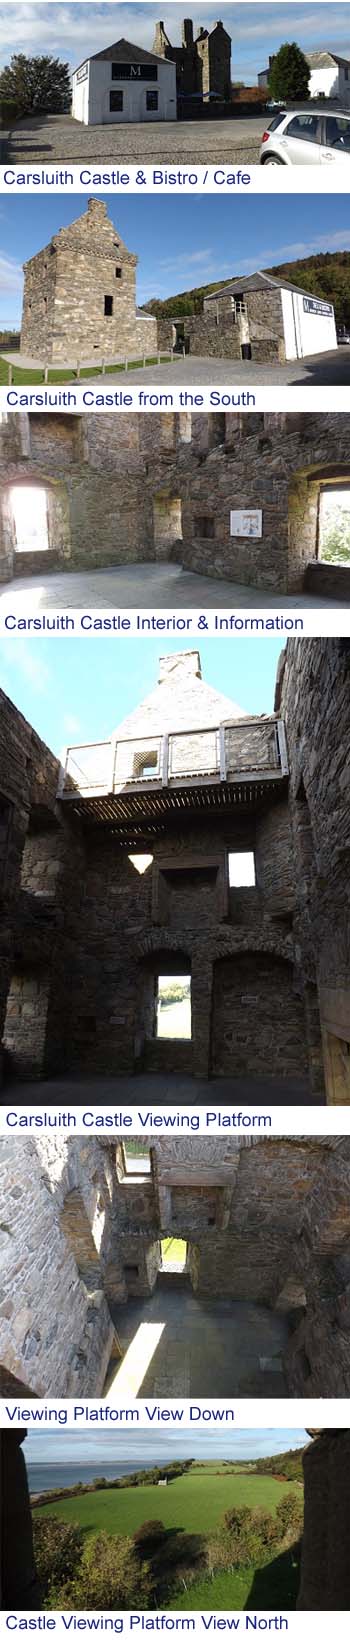 Carsluith Castle Images